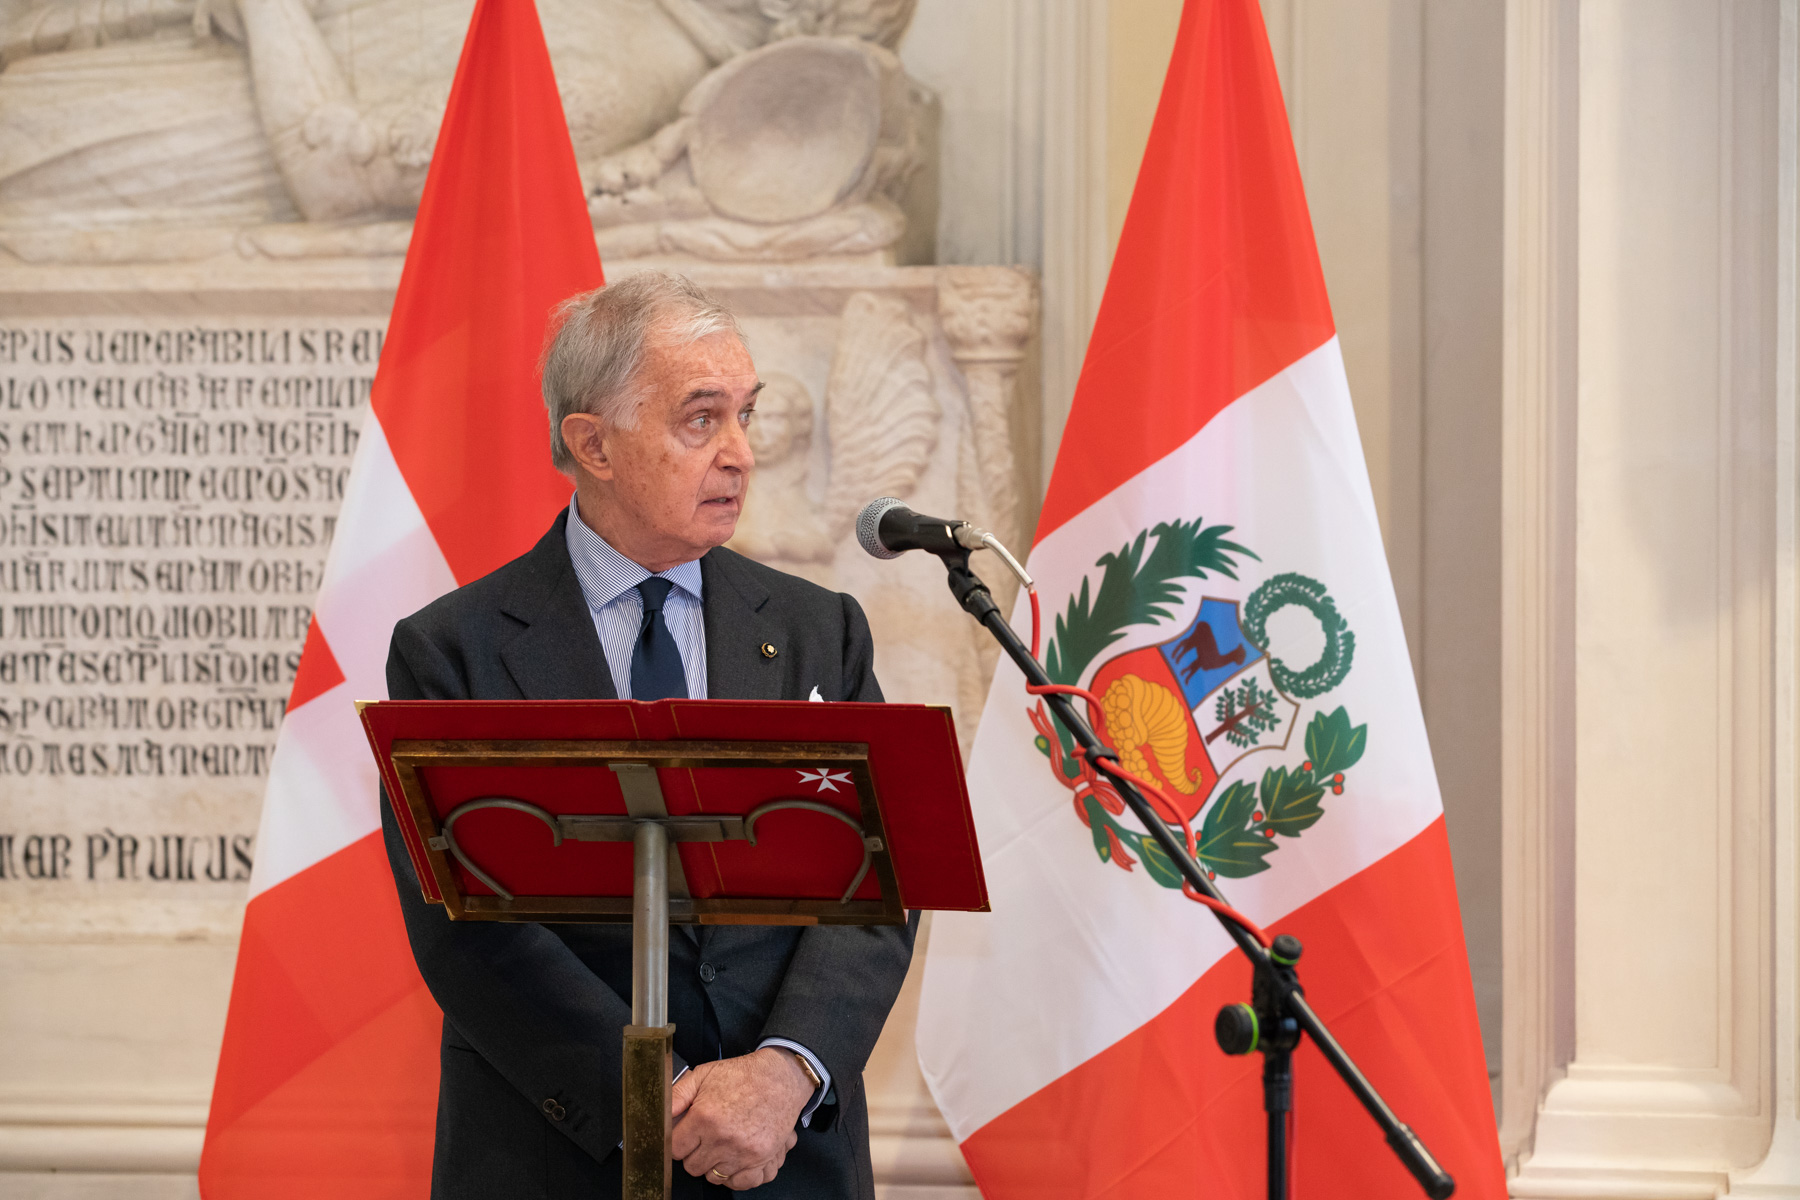 70 Jahre diplomatische Beziehungen mit Peru